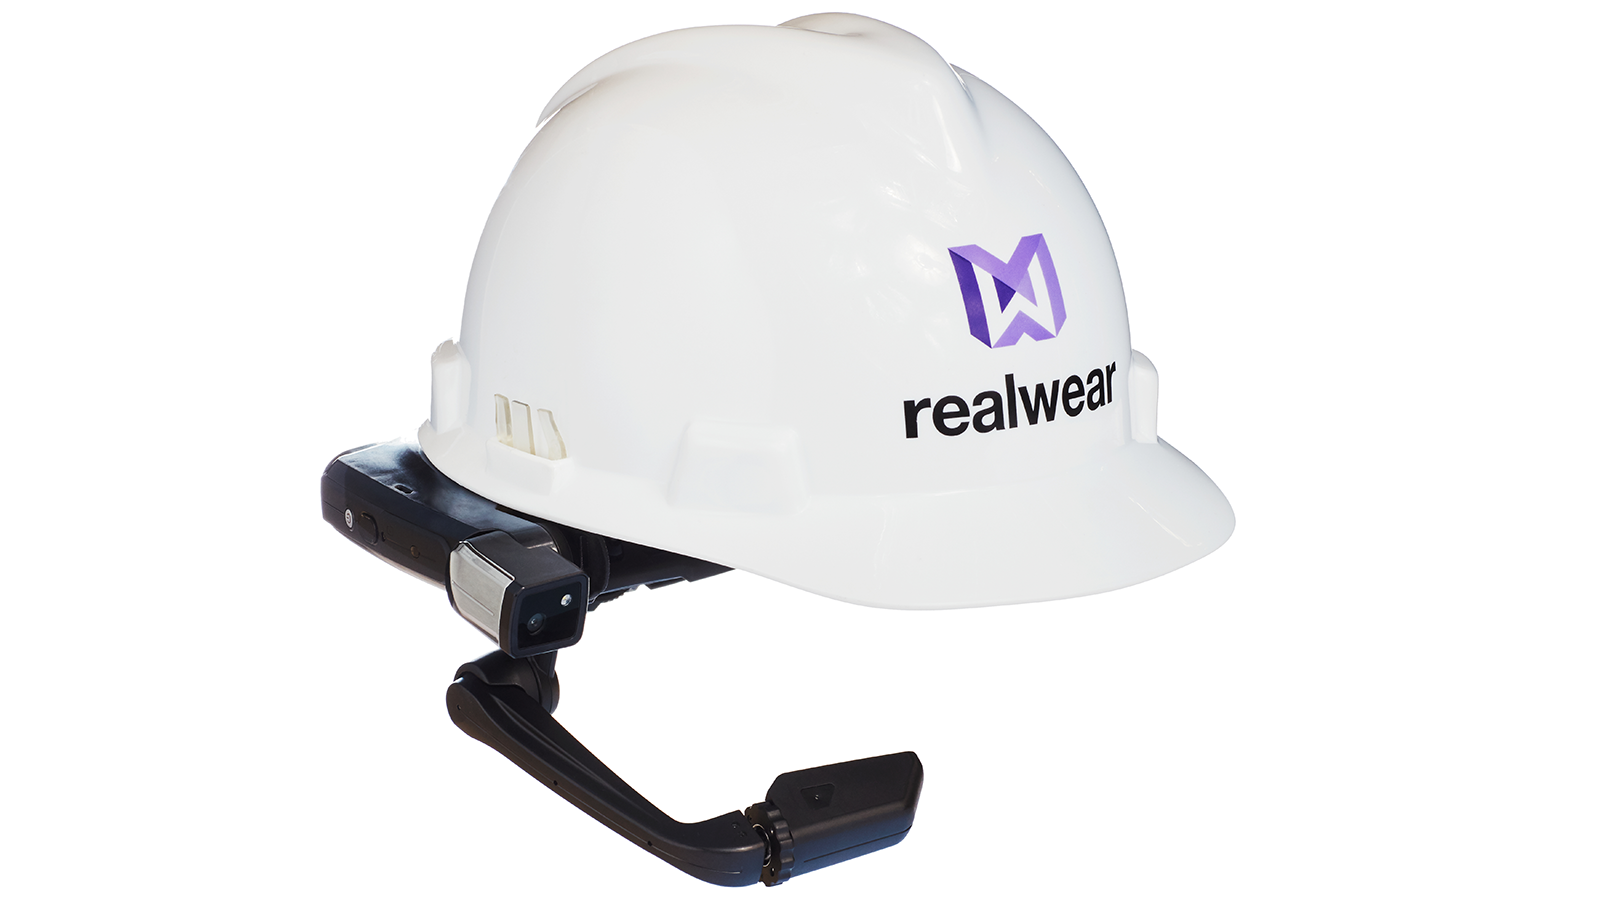 Obrázok helmy od spoločnosti RealWear.